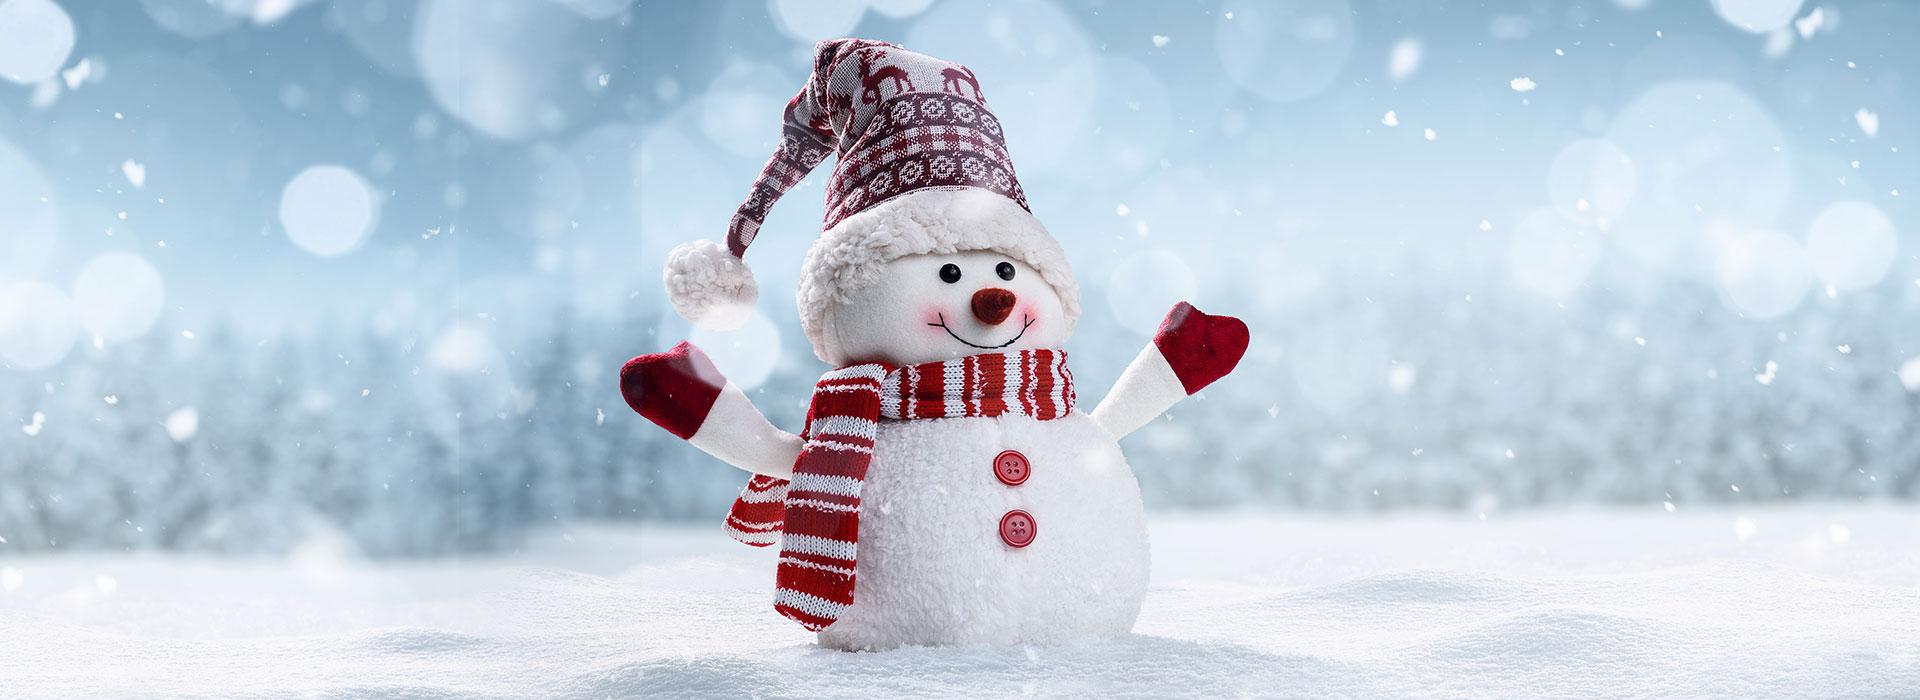 Tiny snowman in a winter scene